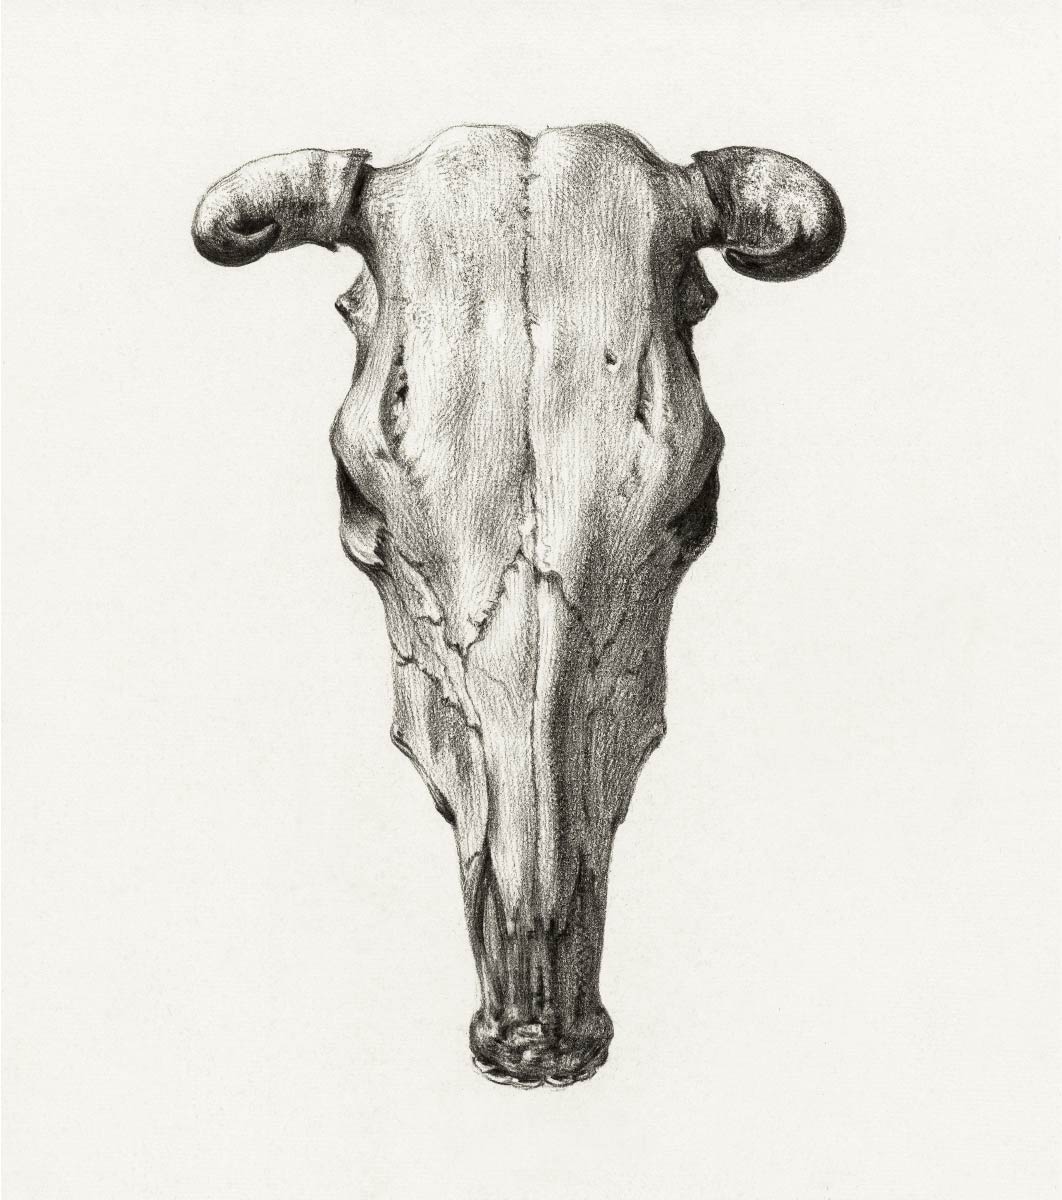 【無料壁紙】ジャン・ベルナール「牛の頭蓋骨-正面 (1816)」 / Jean Bernard_Skull of a cow (1816)